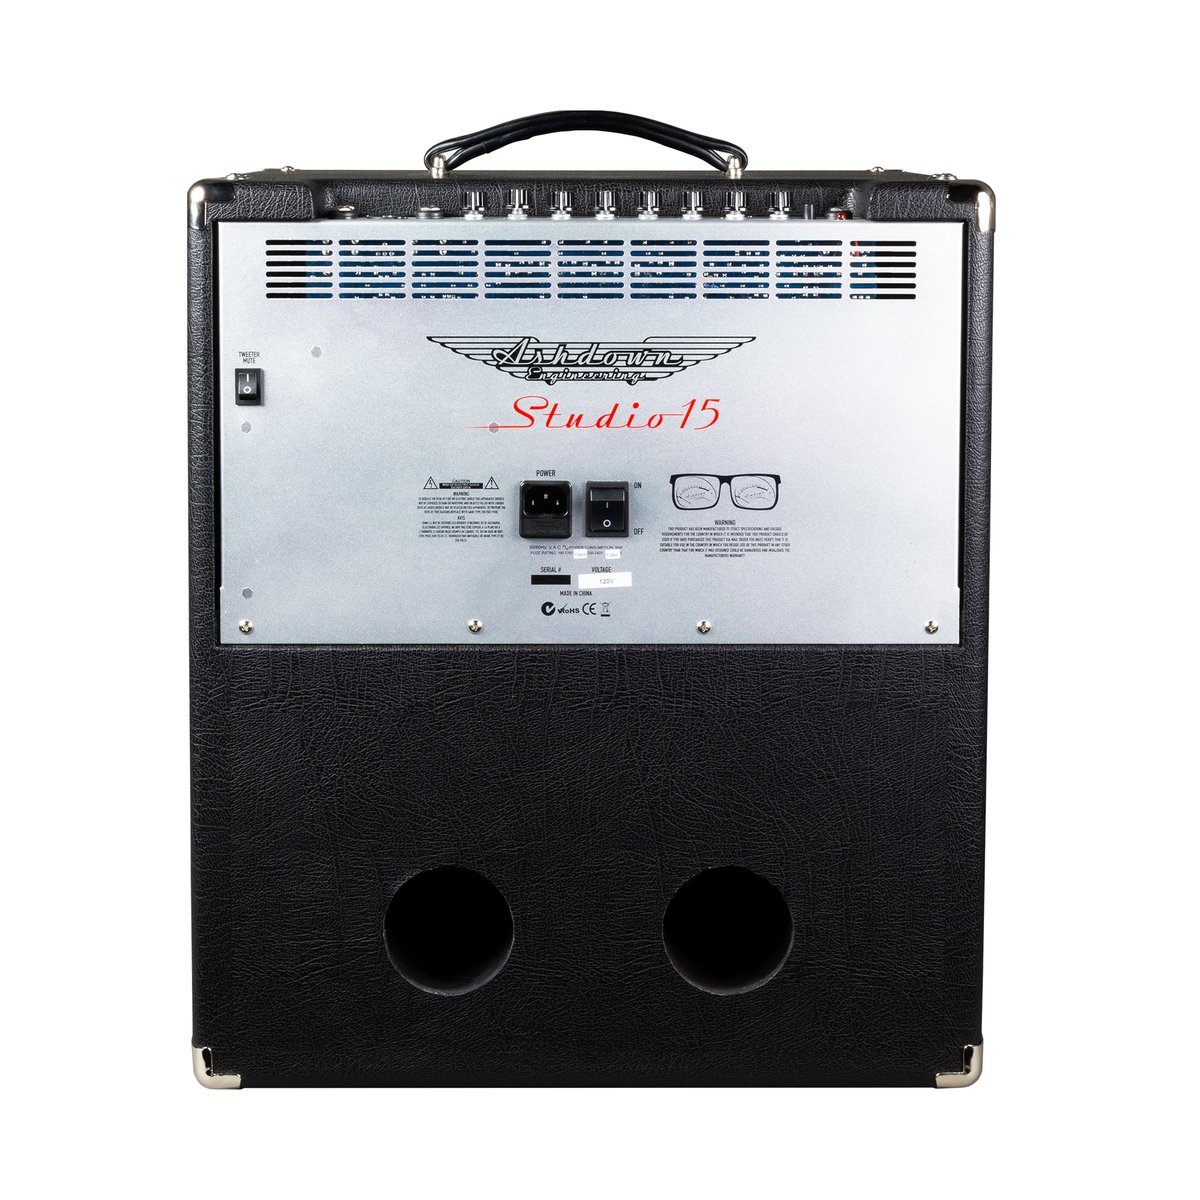 Ashdown Studio 15 1x15 300 W - Combo amplificador para bajo - Variation 2